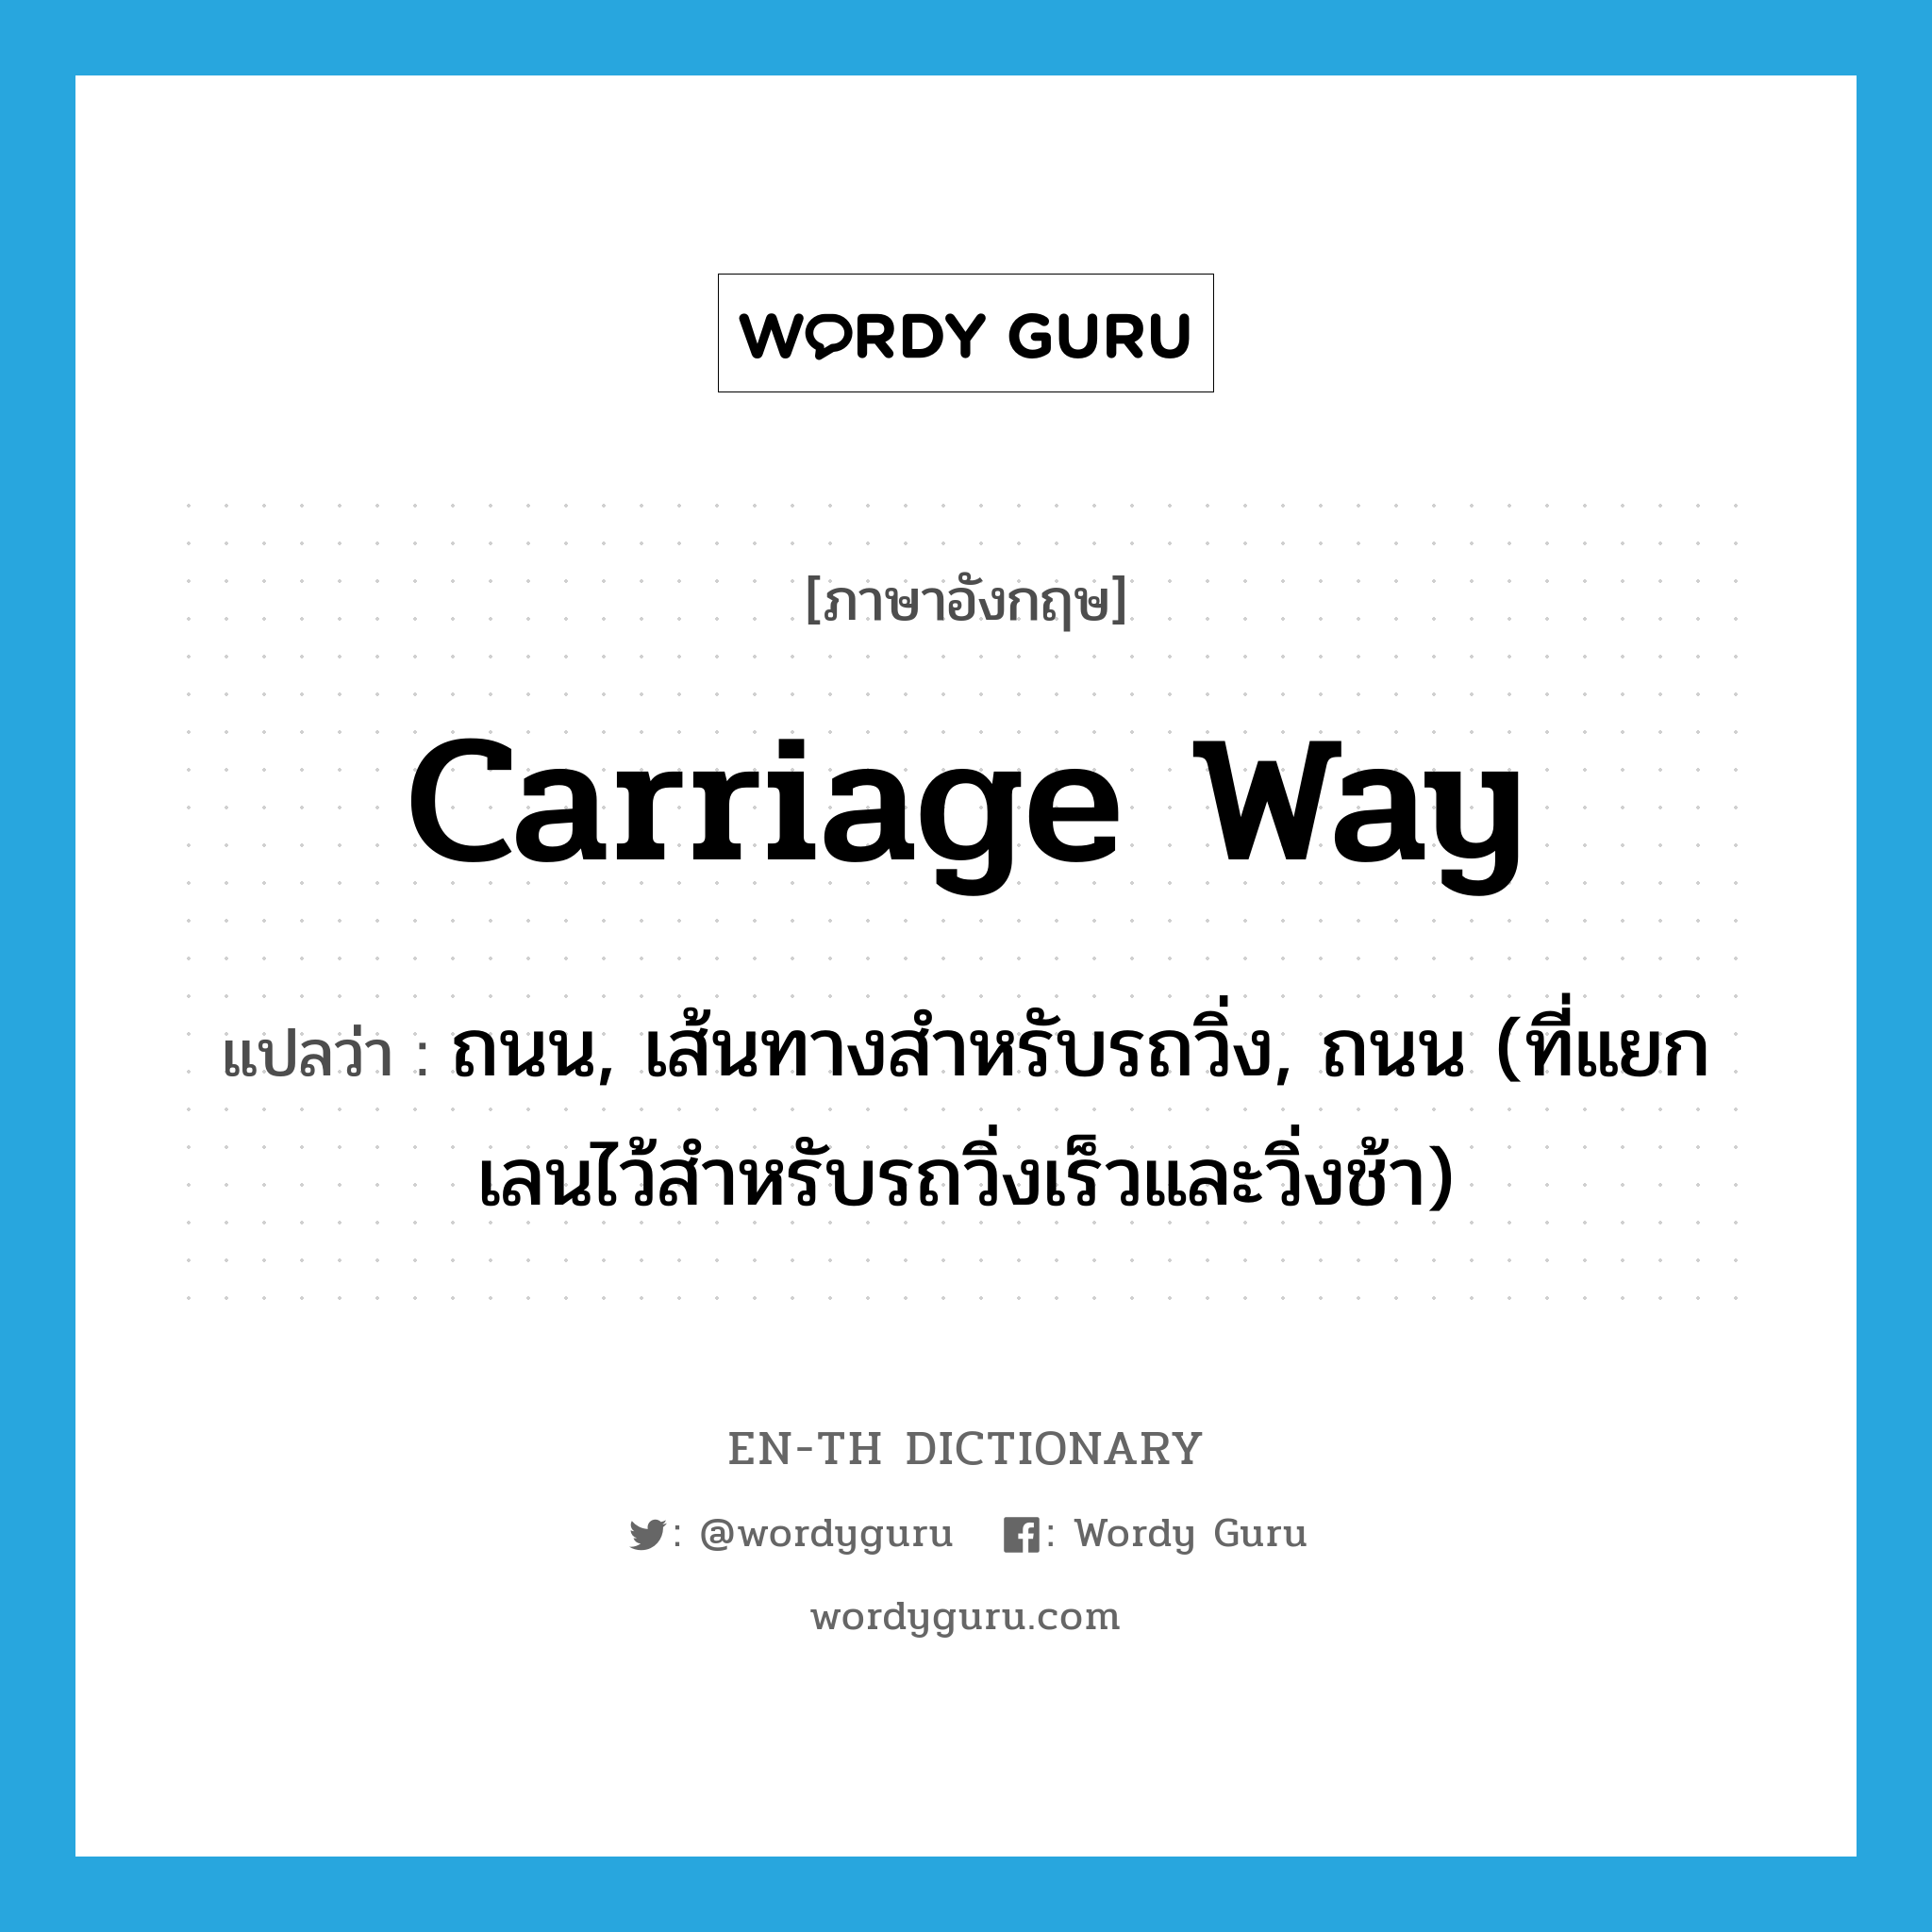 carriage way แปลว่า?, คำศัพท์ภาษาอังกฤษ carriage way แปลว่า ถนน, เส้นทางสำหรับรถวิ่ง, ถนน (ที่แยกเลนไว้สำหรับรถวิ่งเร็วและวิ่งช้า) ประเภท N หมวด N